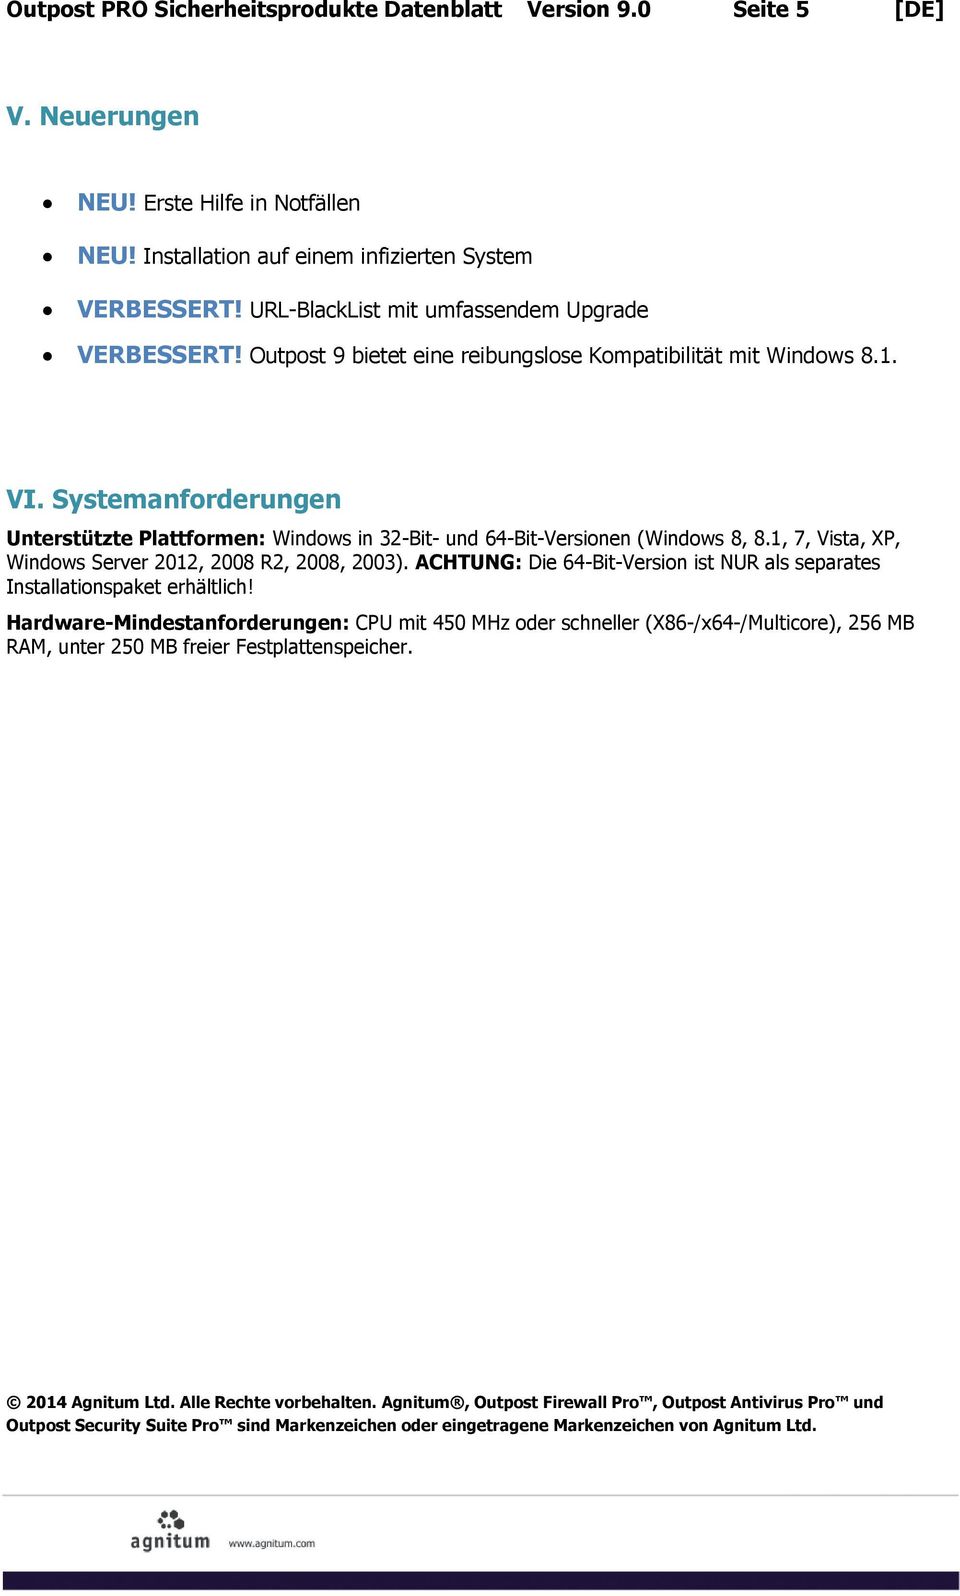 Systemanfrderungen Unterstützte Plattfrmen: Windws in 32-Bit- und 64-Bit-Versinen (Windws 8, 8.1, 7, Vista, XP, Windws Server 2012, 2008 R2, 2008, 2003).